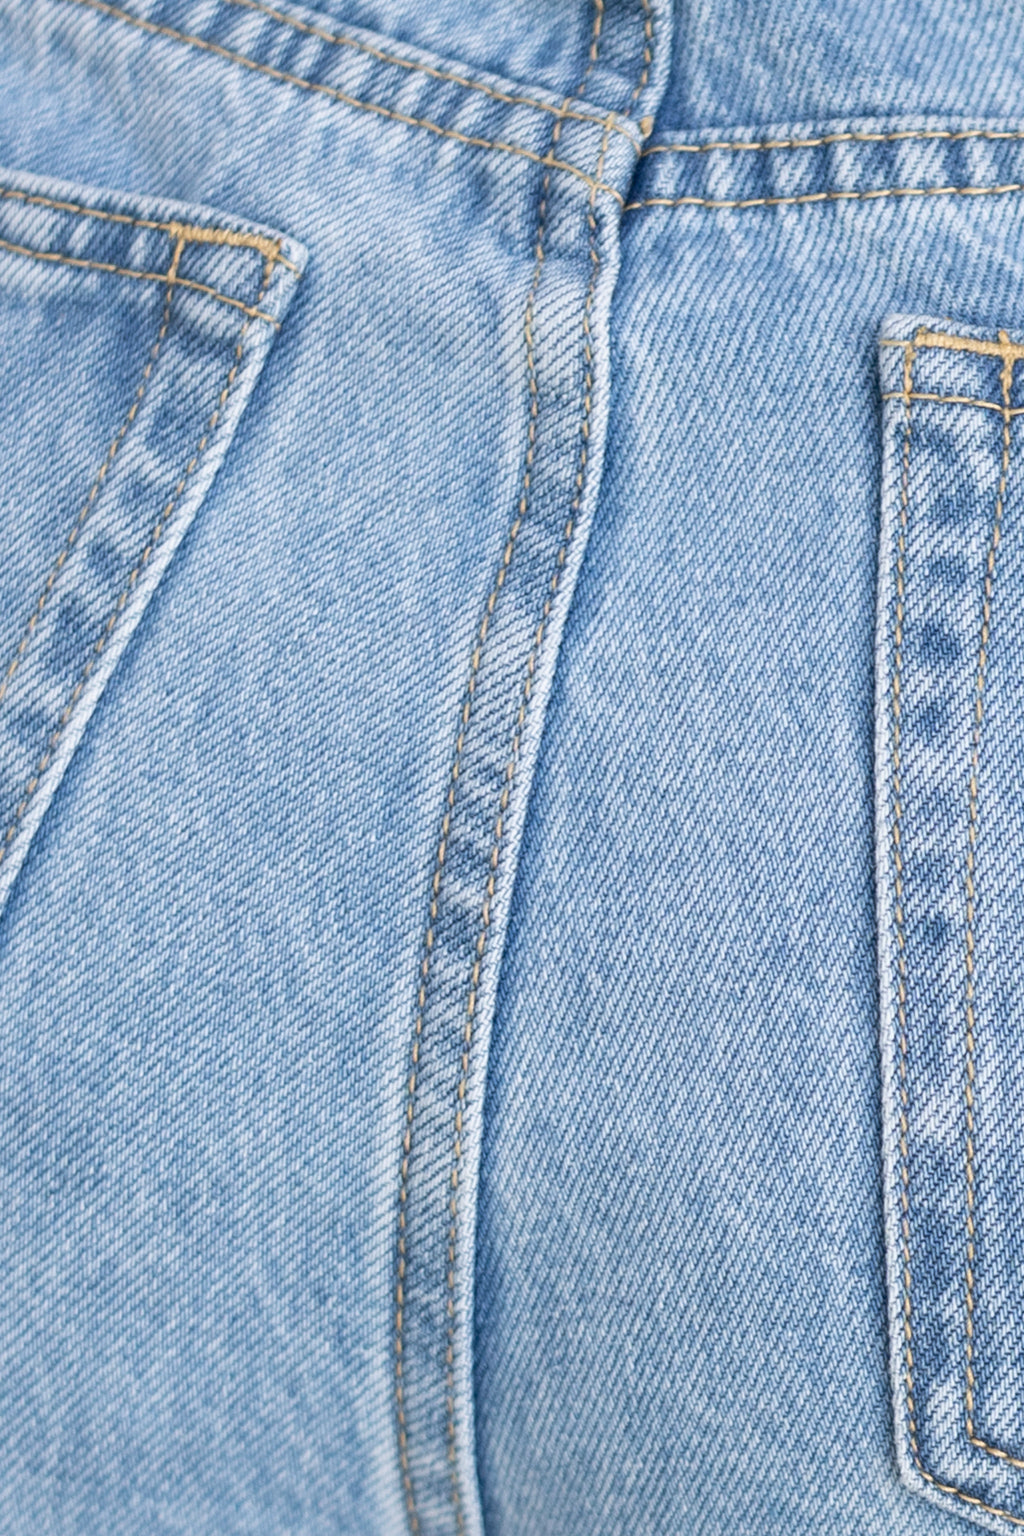 Jeans mit geradem Bein (Blau)